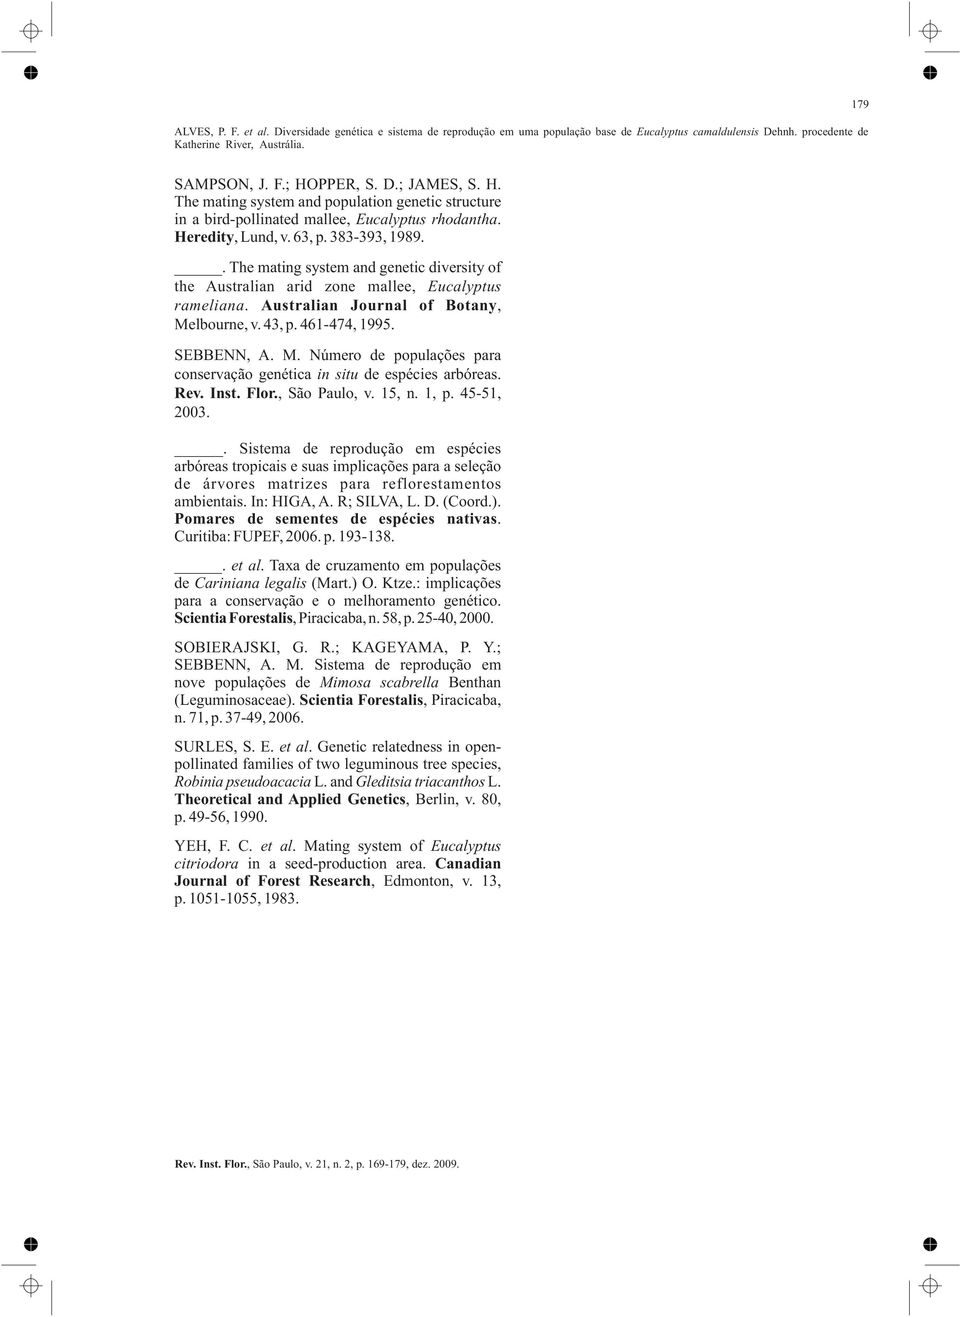 lbourne, v. 43, p. 461-474, 1995. SEBBENN, A. M. Número de populações para conservação genética in situ de espécies arbóreas. Rev. Inst. Flor., São Paulo, v. 15, n. 1, p. 45-51, 2003.